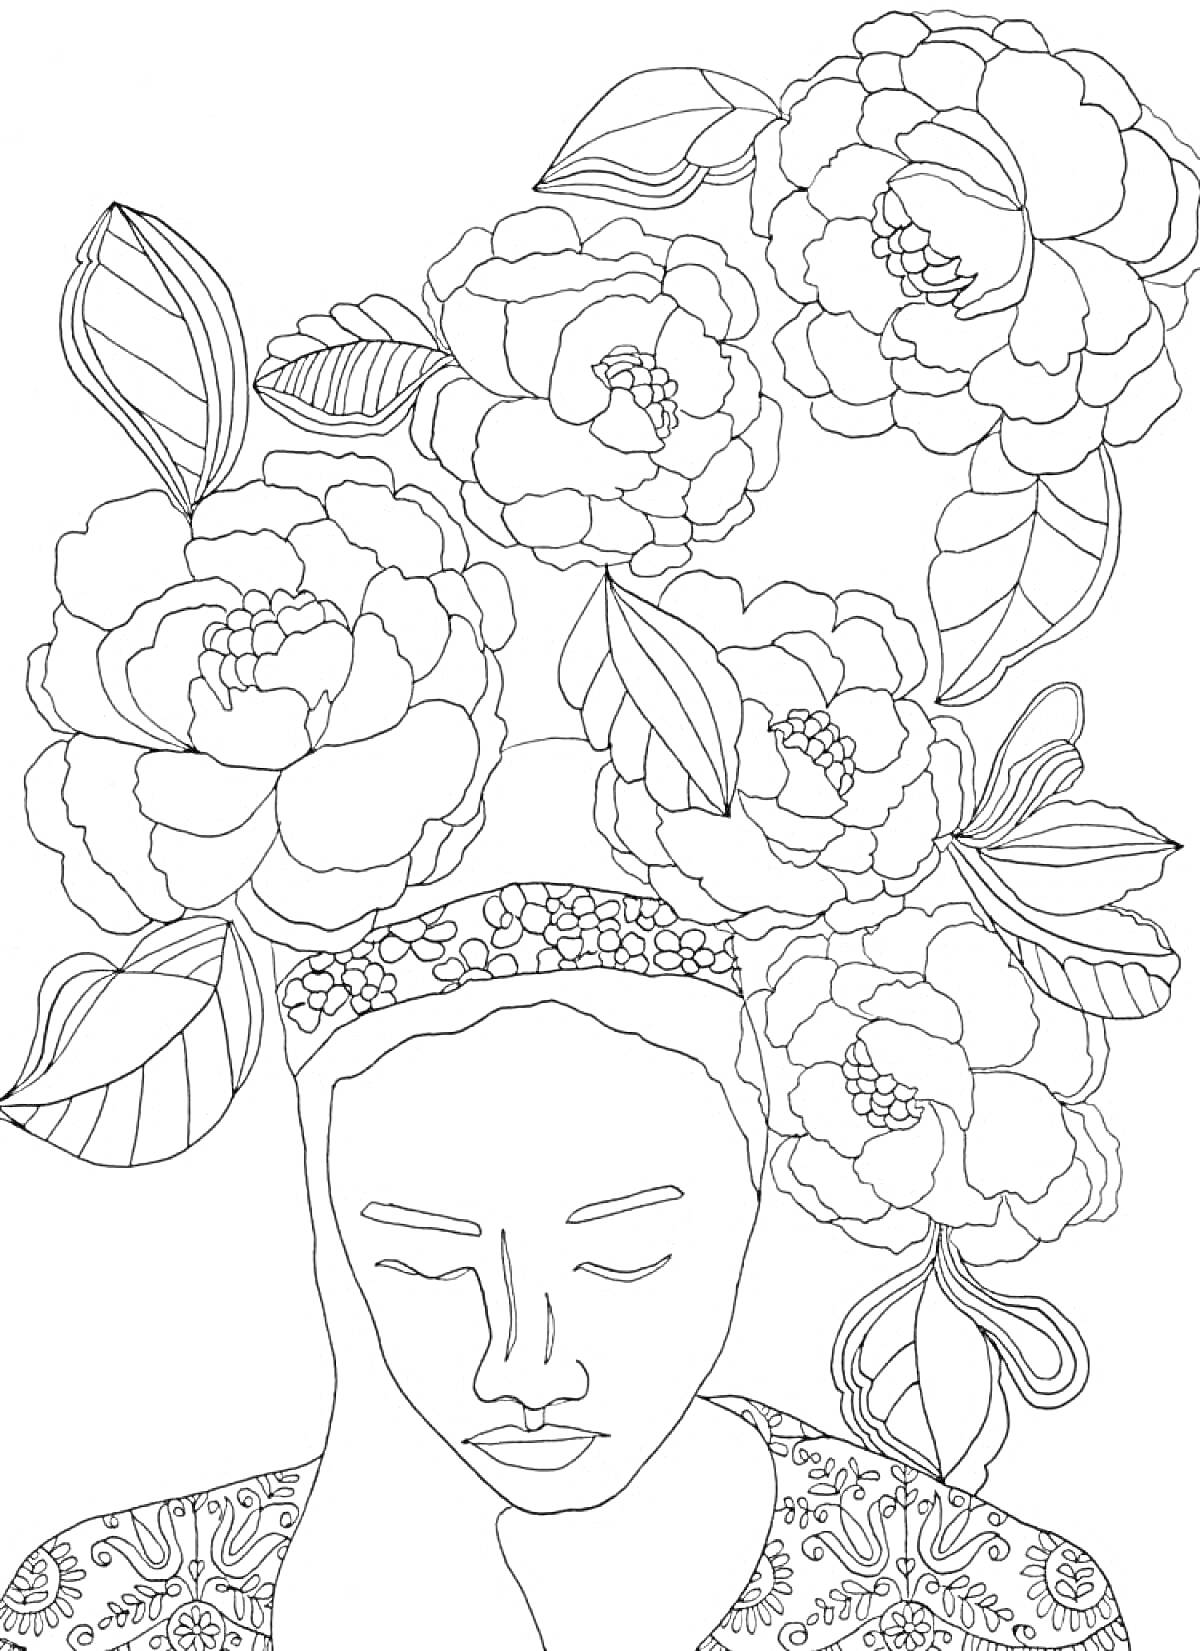 Раскраска Голова девушки с закрытыми глазами, украшенная крупными цветами и листьями